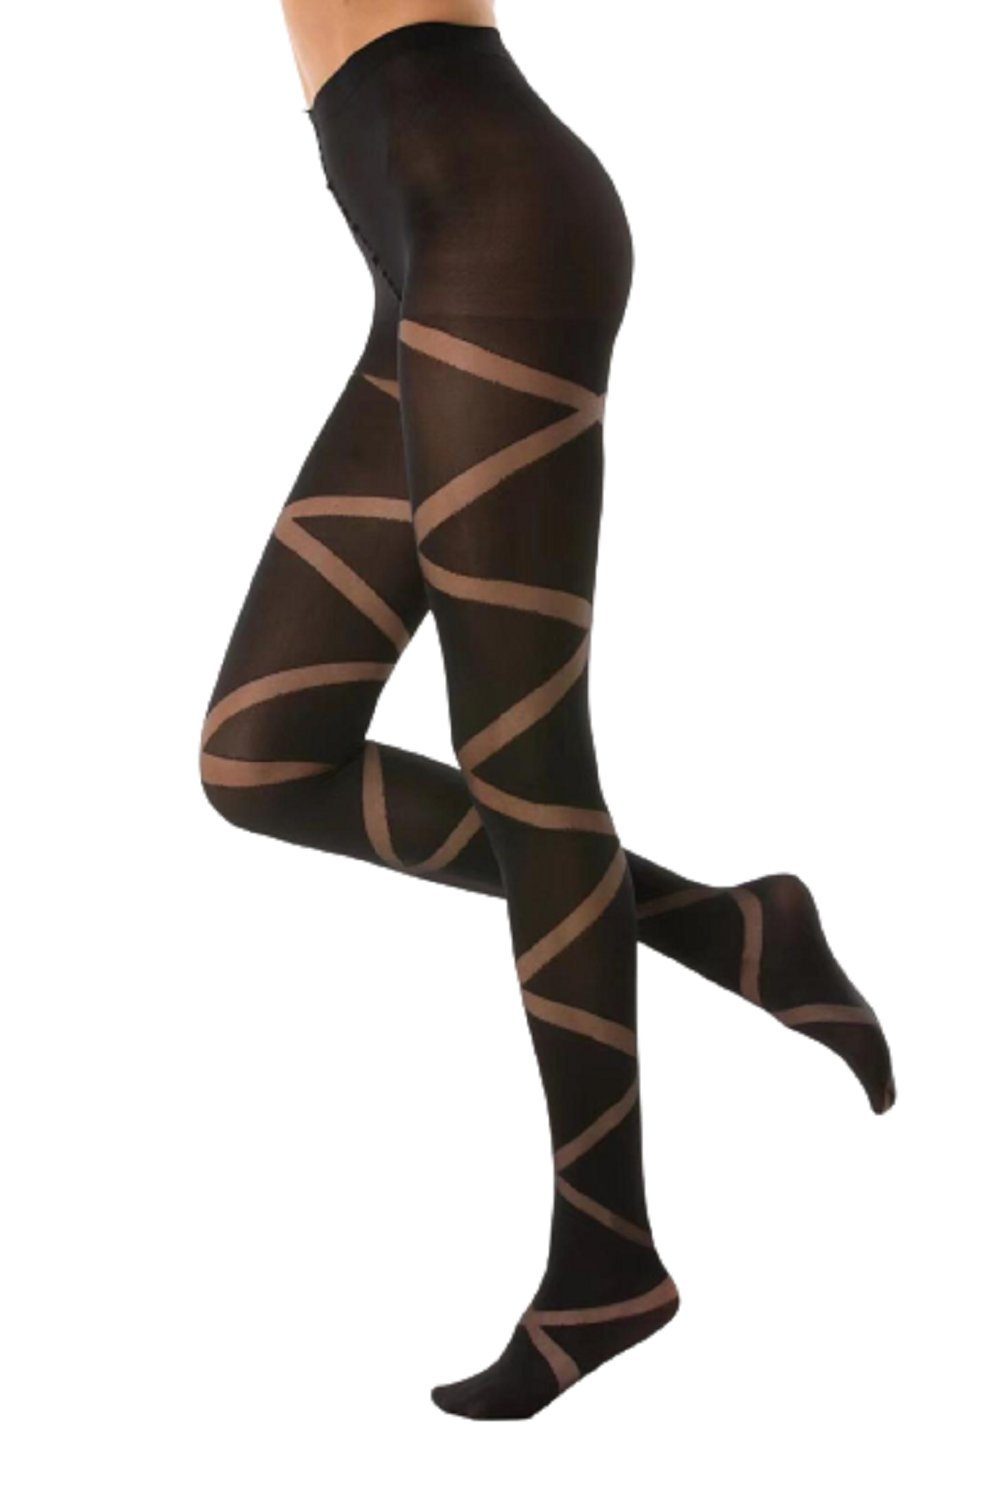 cofi1453 Feinstrumpfhose Damen Strumpfhose mit Muster N.1587 Muster Streifen  Nero Frauen Hose Socken 80 DEN schwarz